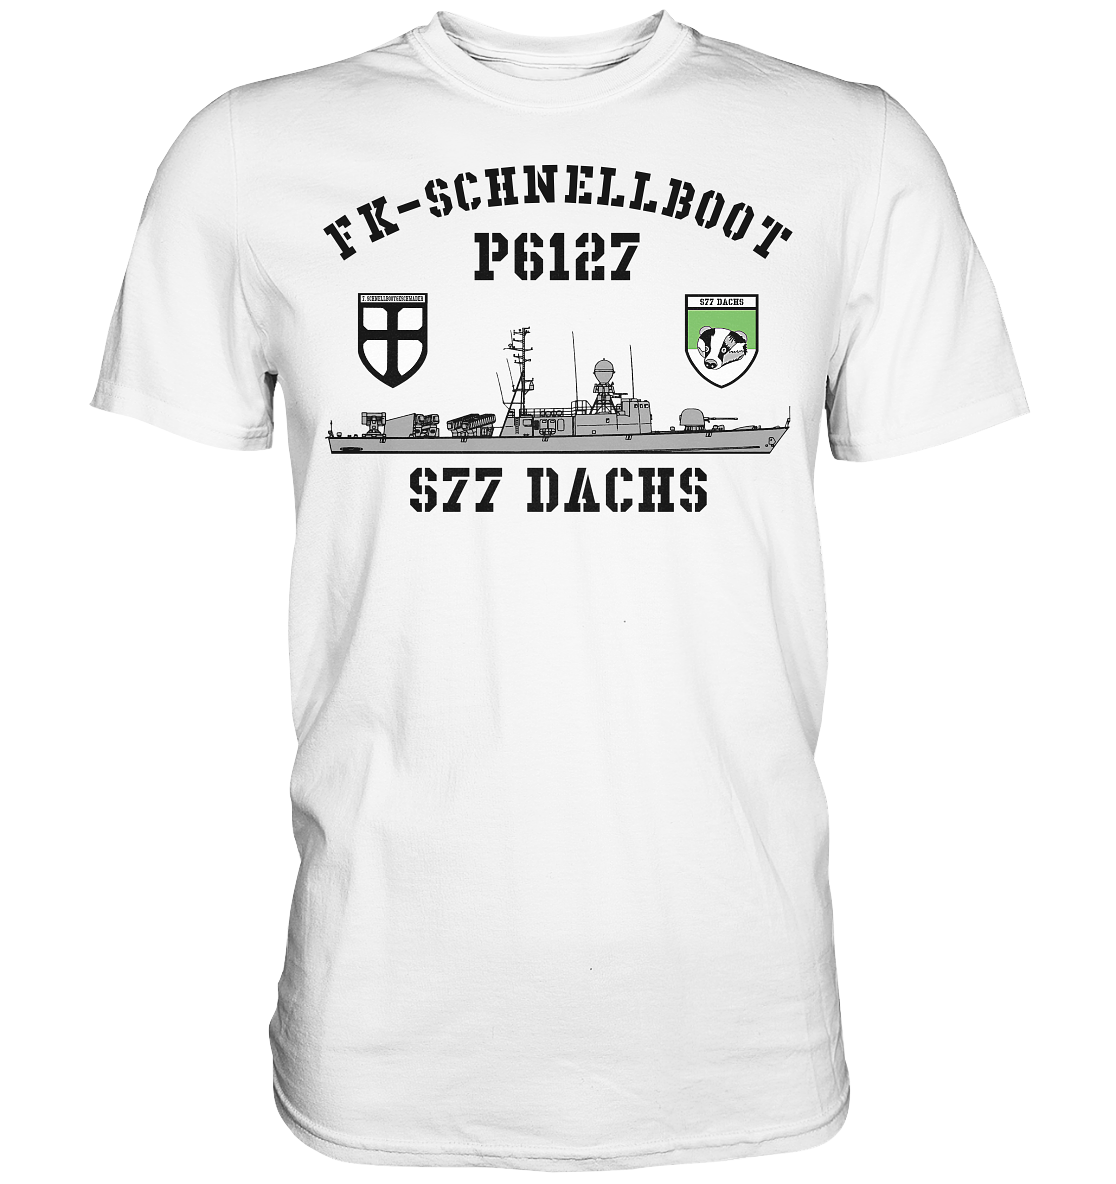 P6127 S77 DACHS 7.SG  - Premium Shirt